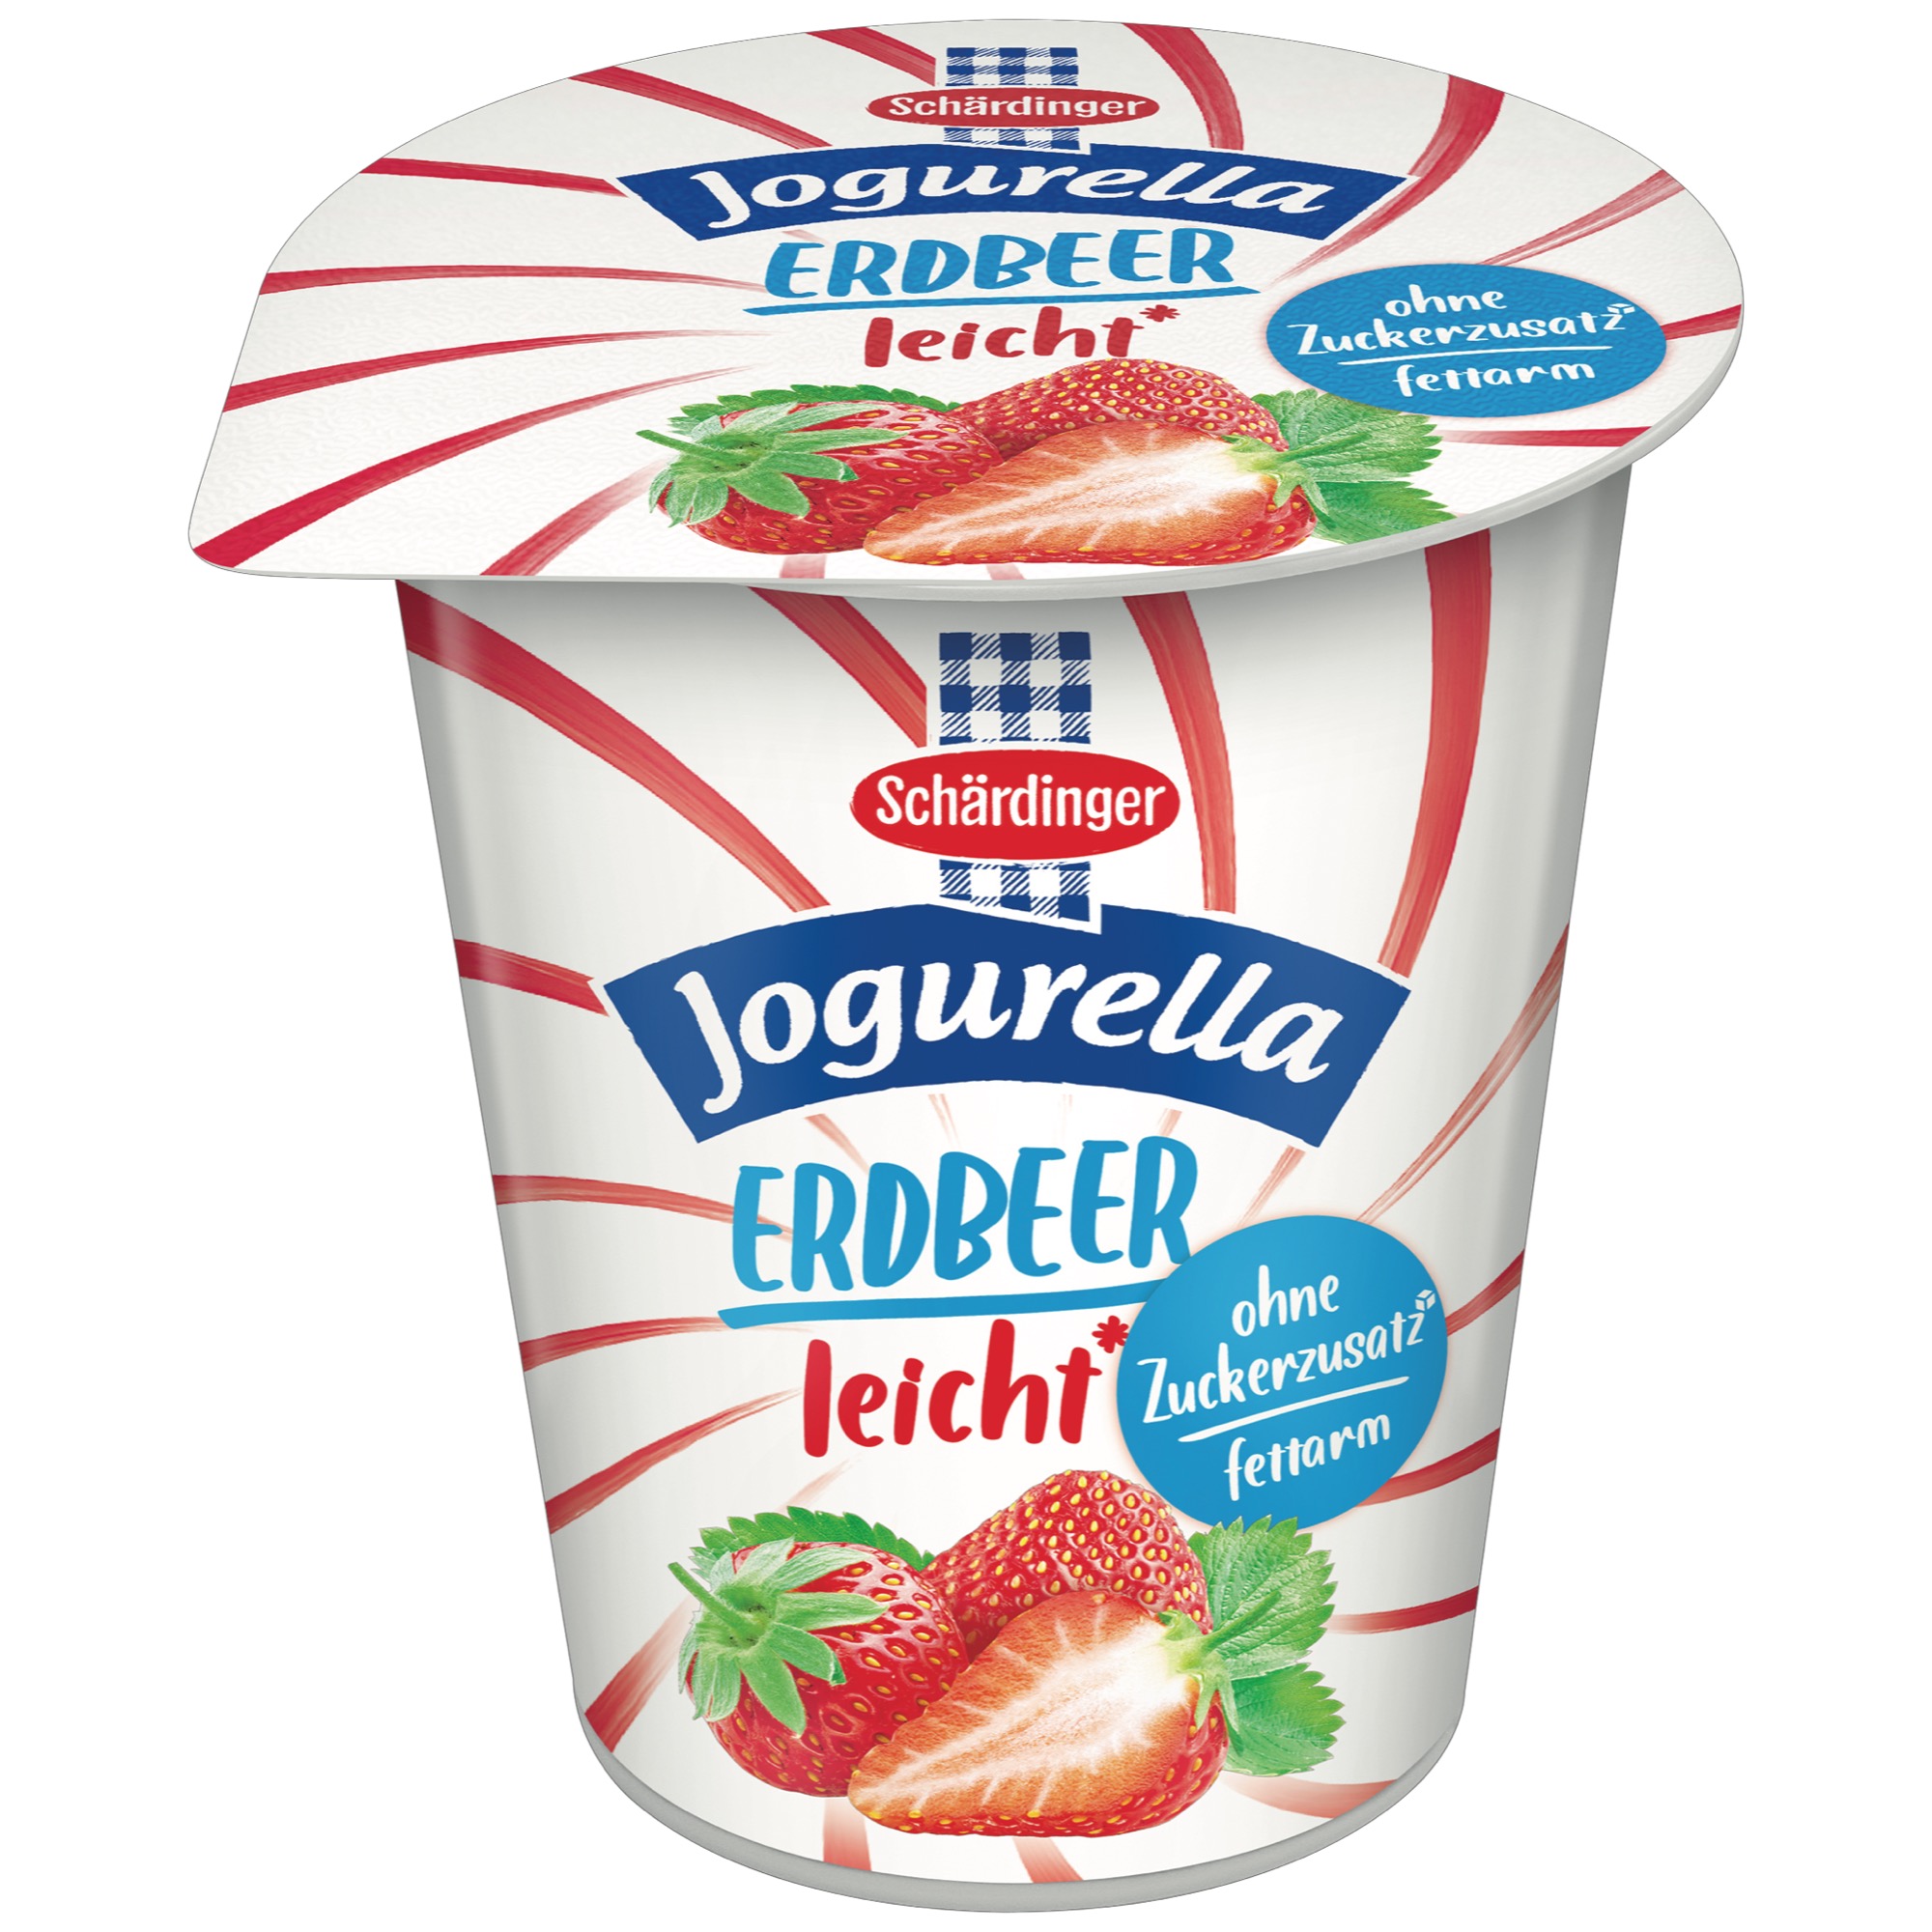 Schärdinger Jogurella Frujo 150g, light 1%